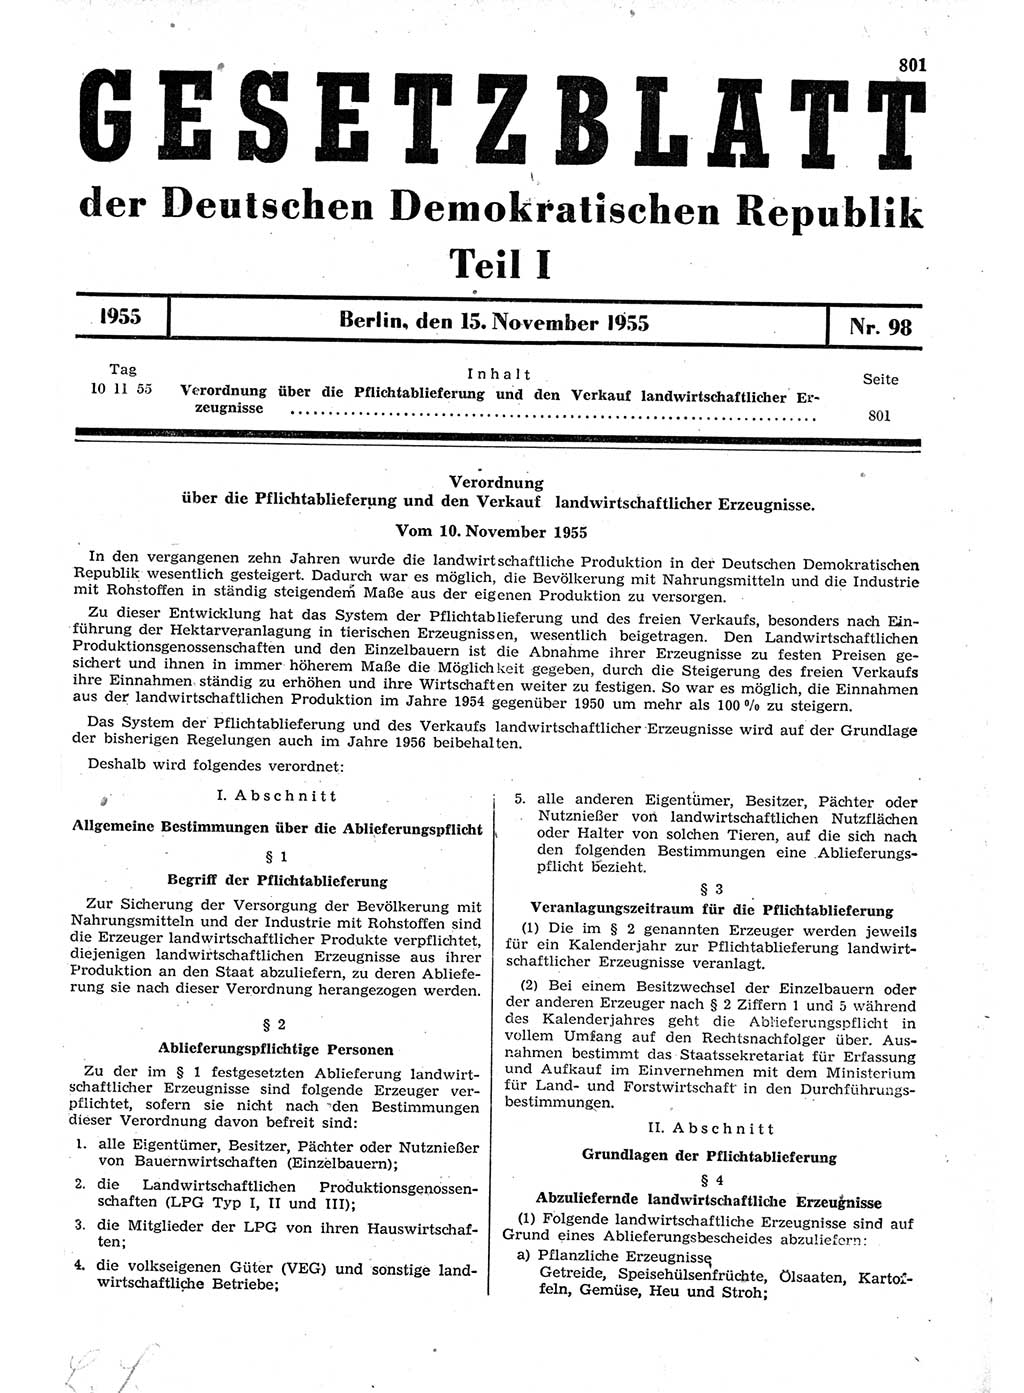 Gesetzblatt (GBl.) der Deutschen Demokratischen Republik (DDR) Teil Ⅰ 1955, Seite 801 (GBl. DDR Ⅰ 1955, S. 801)